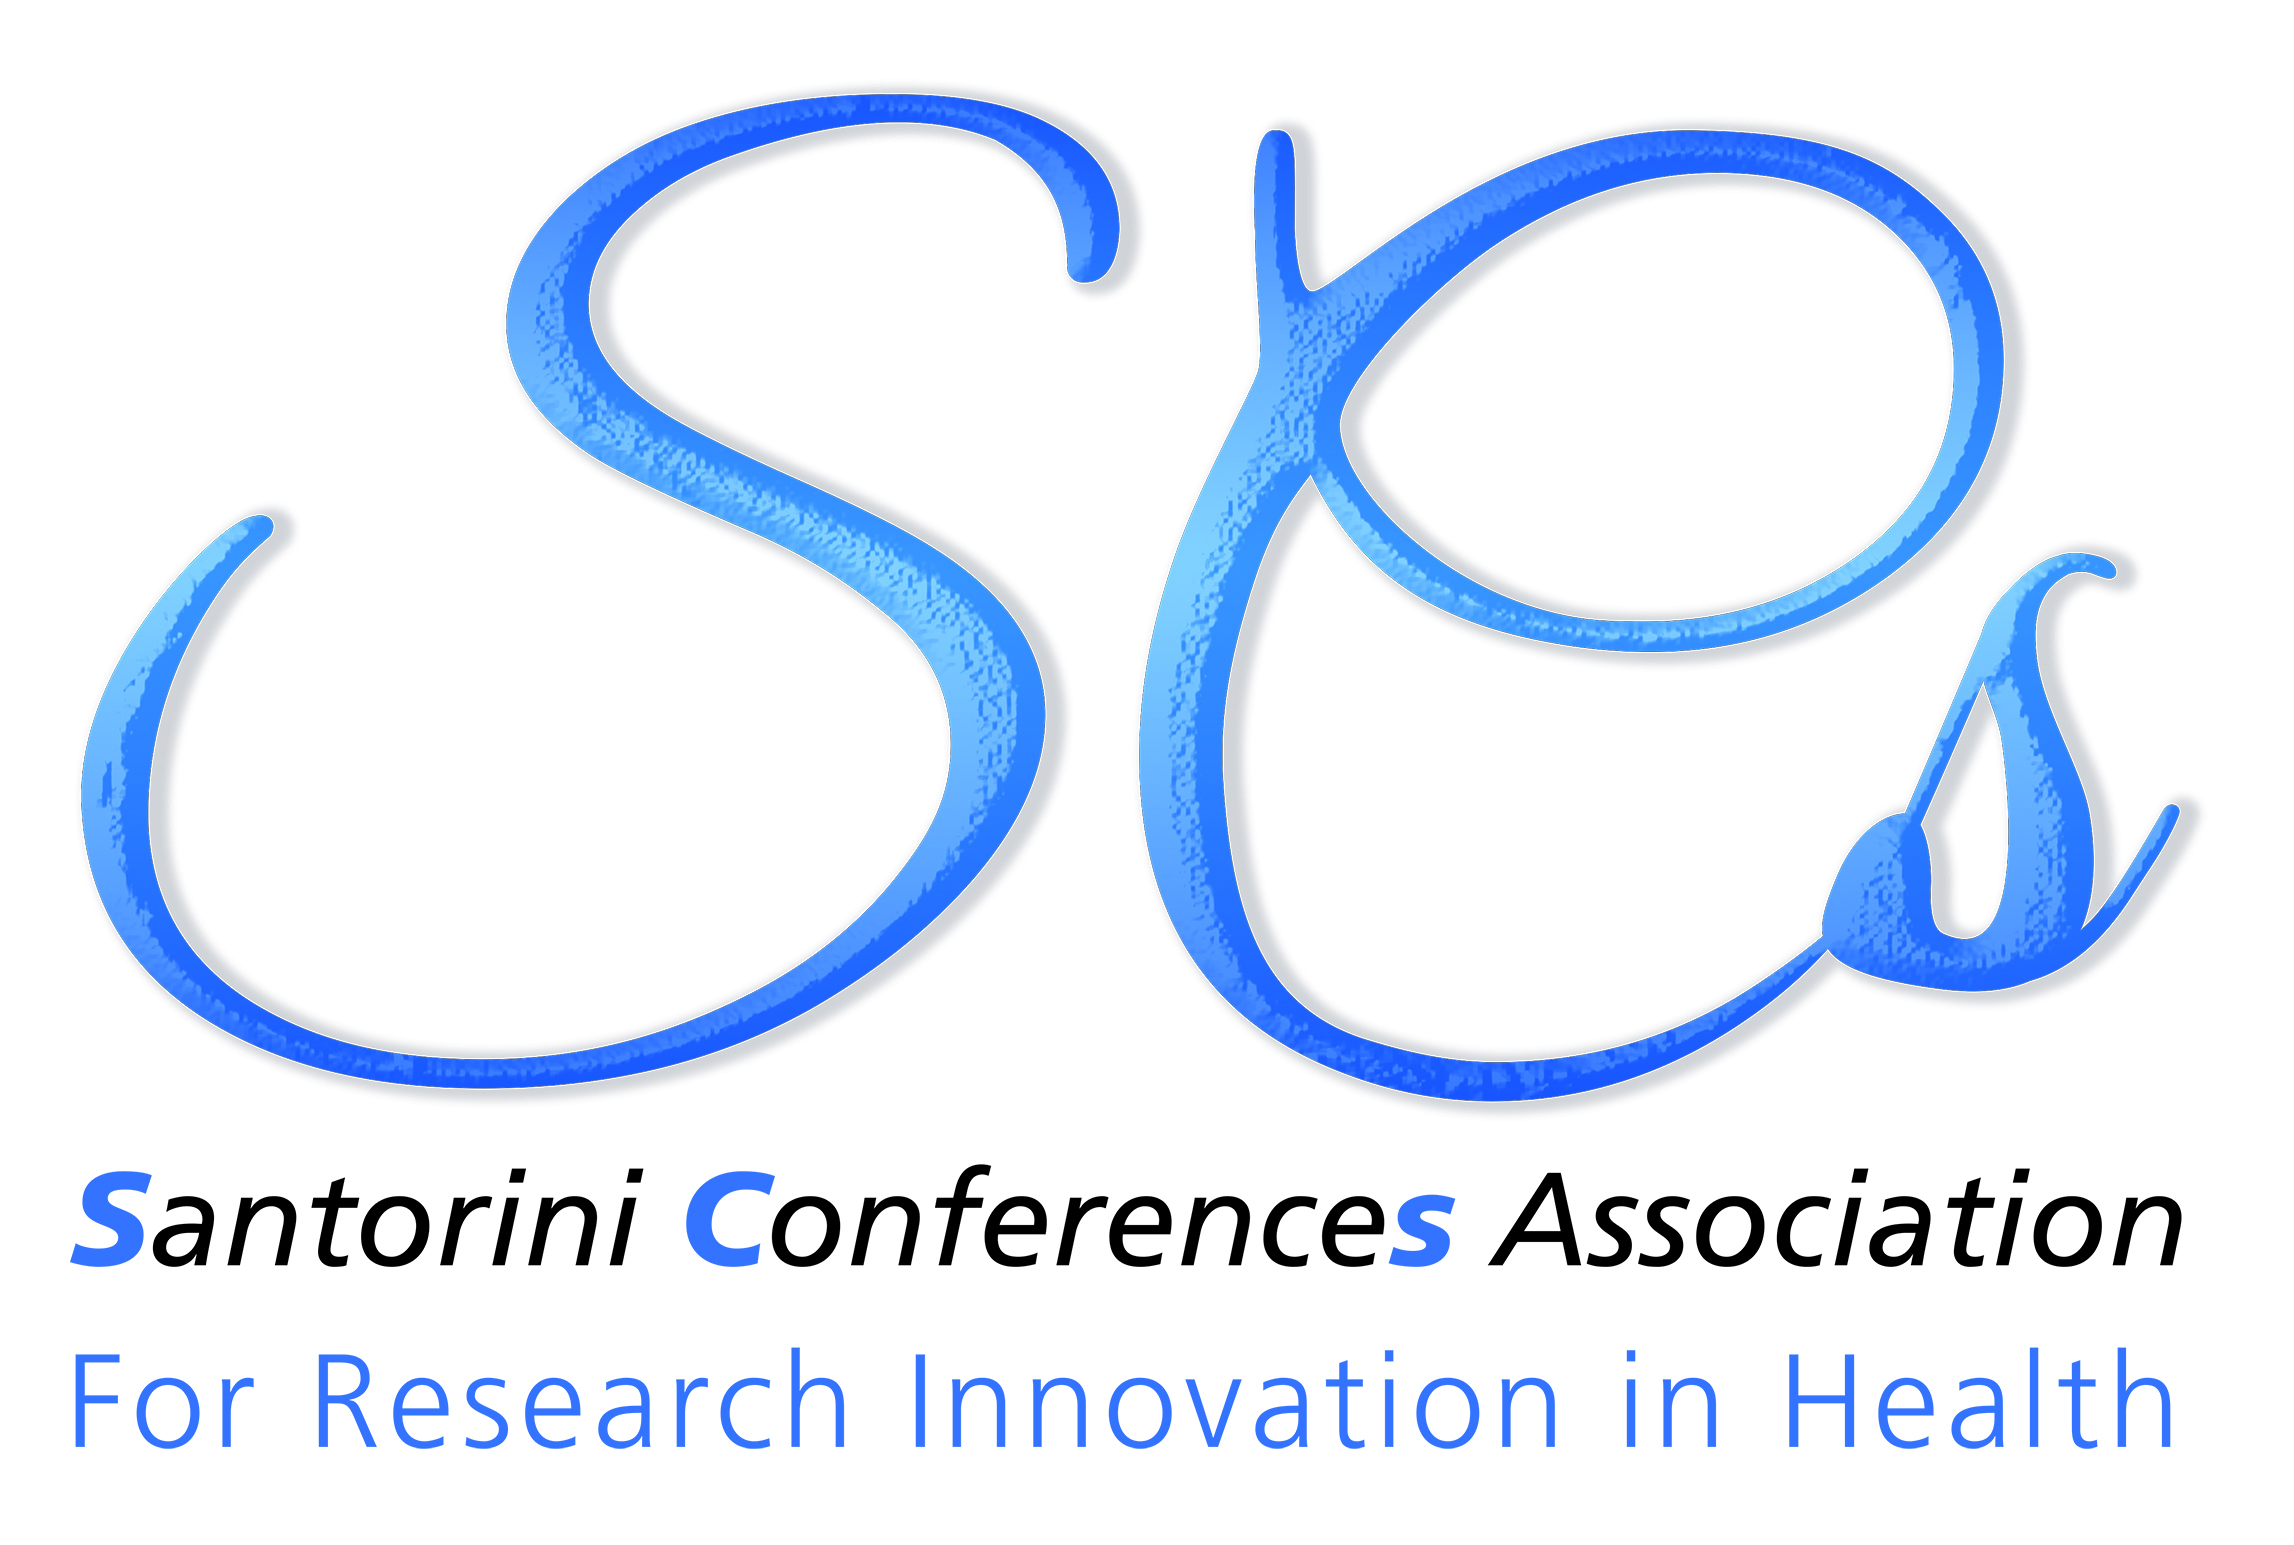 Santorini Conferences Association